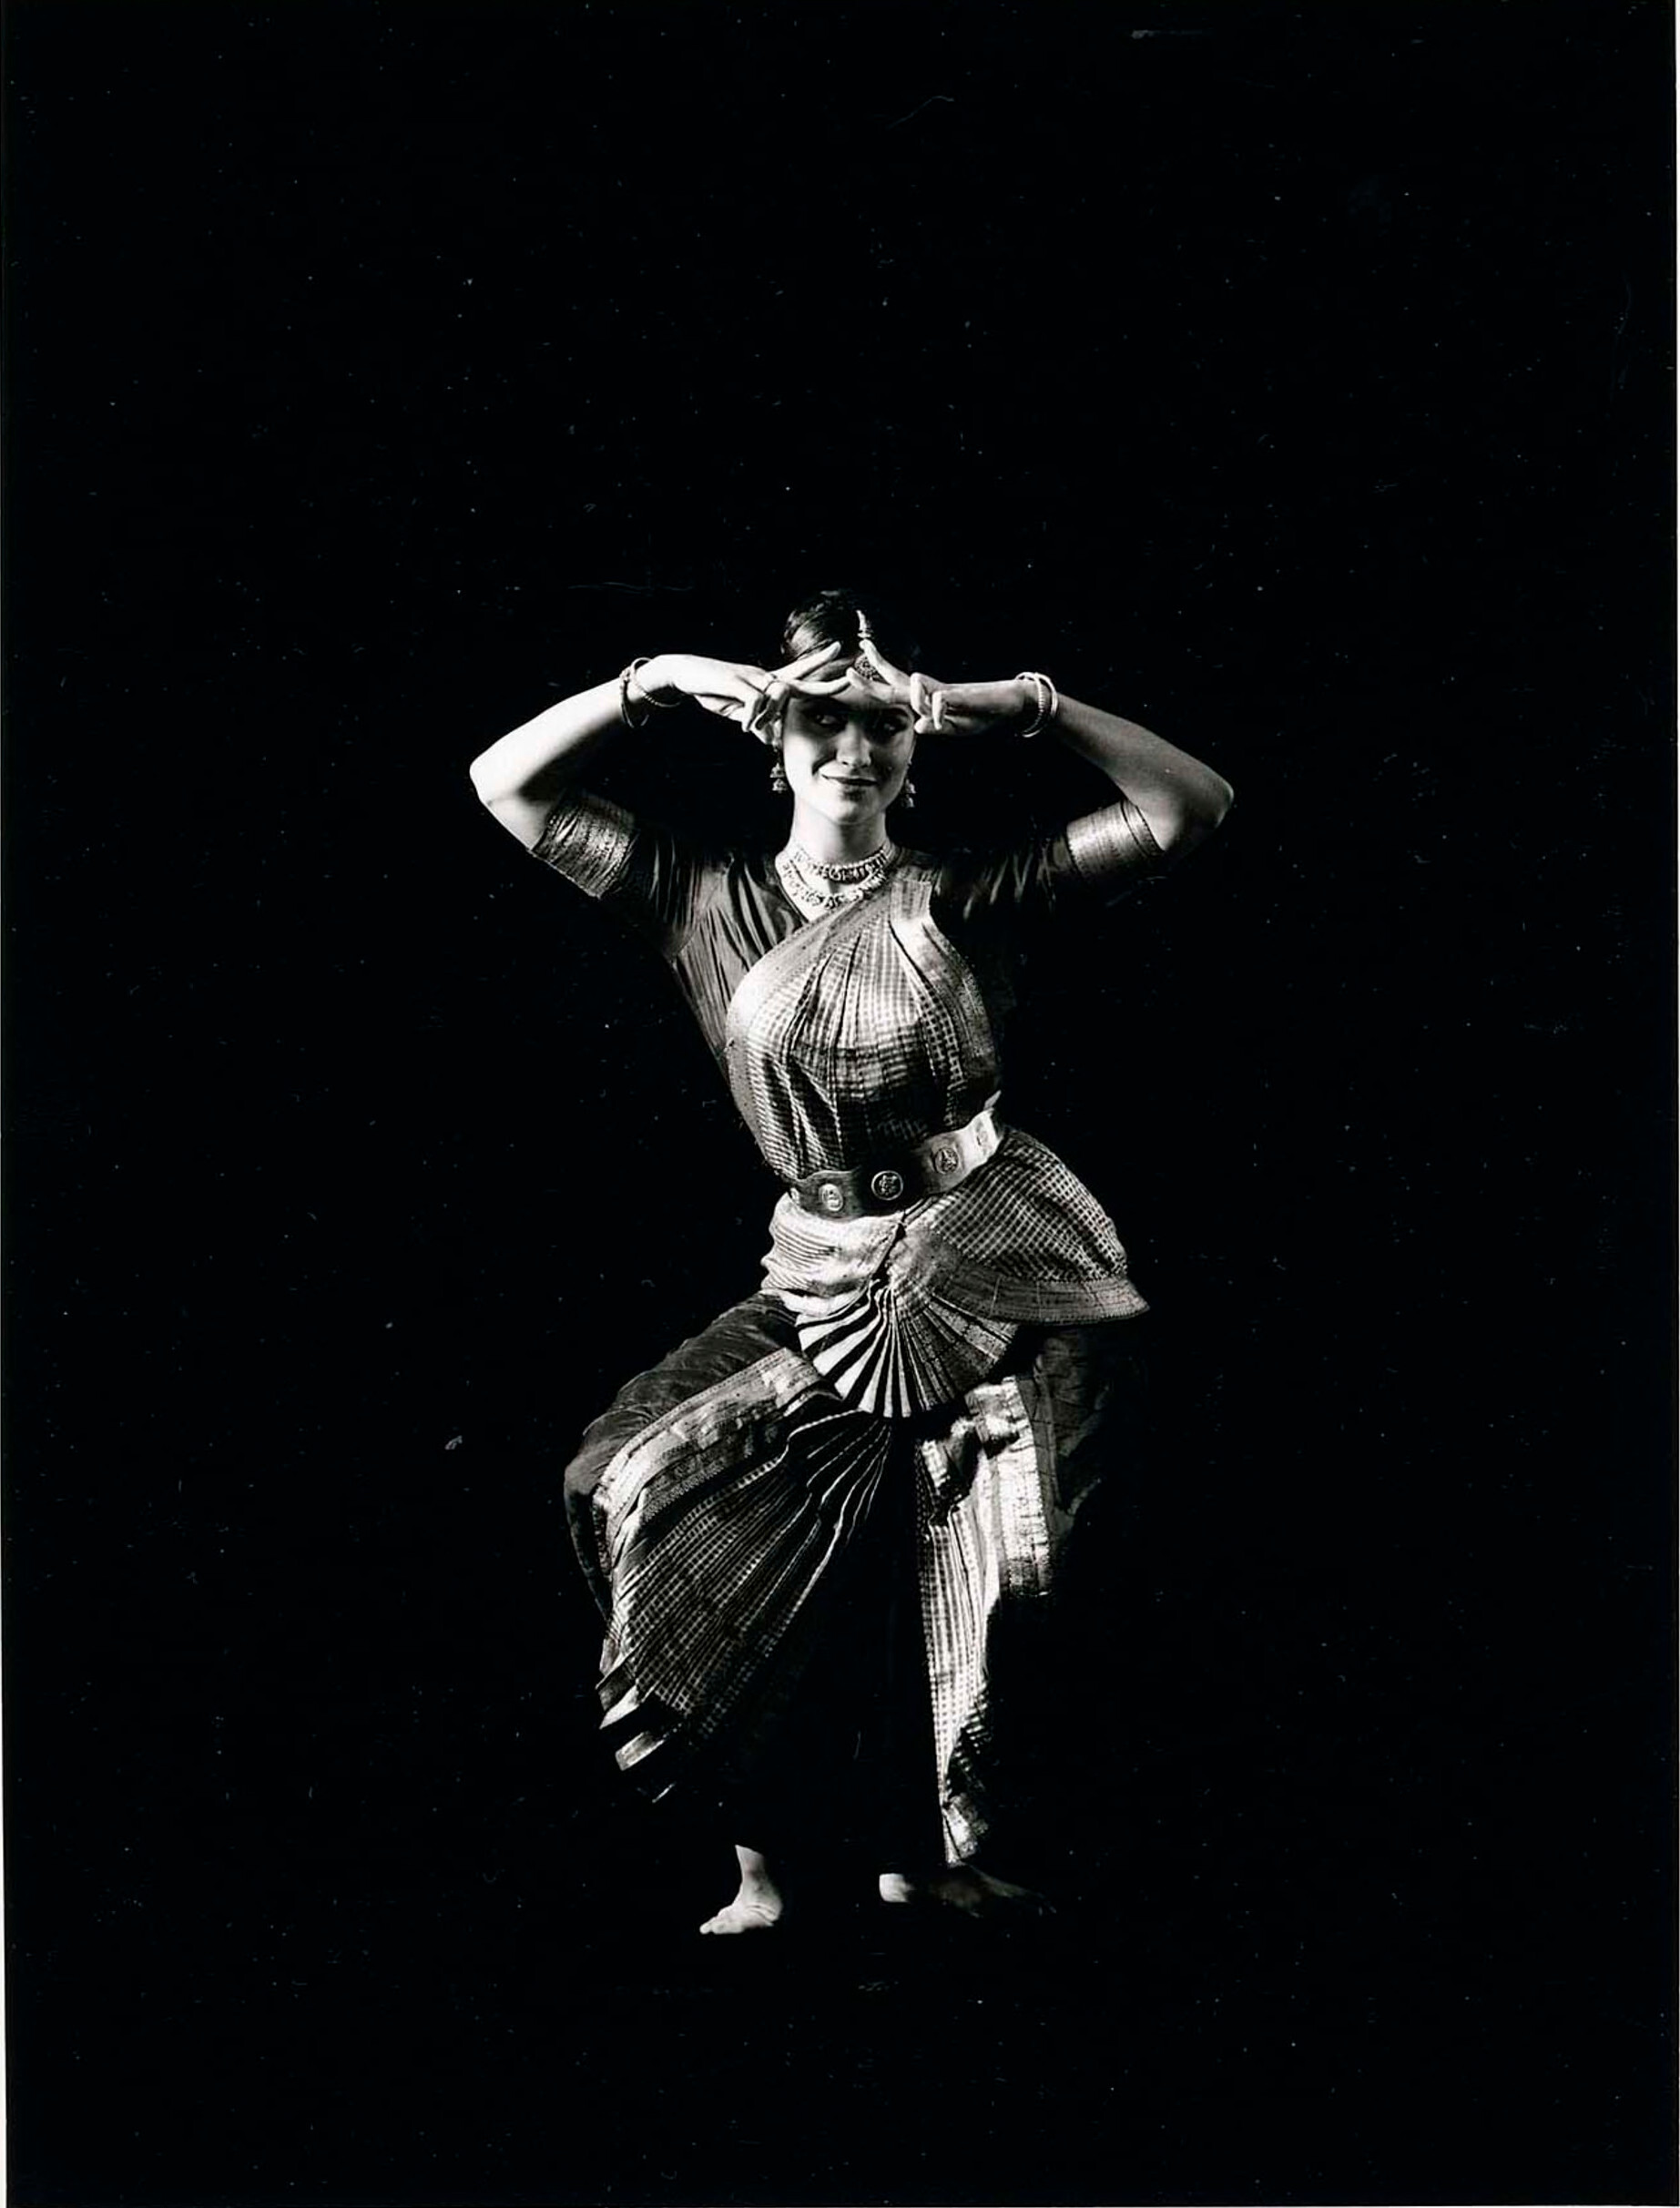 Лили Шивеш Вари, 1993 г. Фотограф Дэвид Сайднер